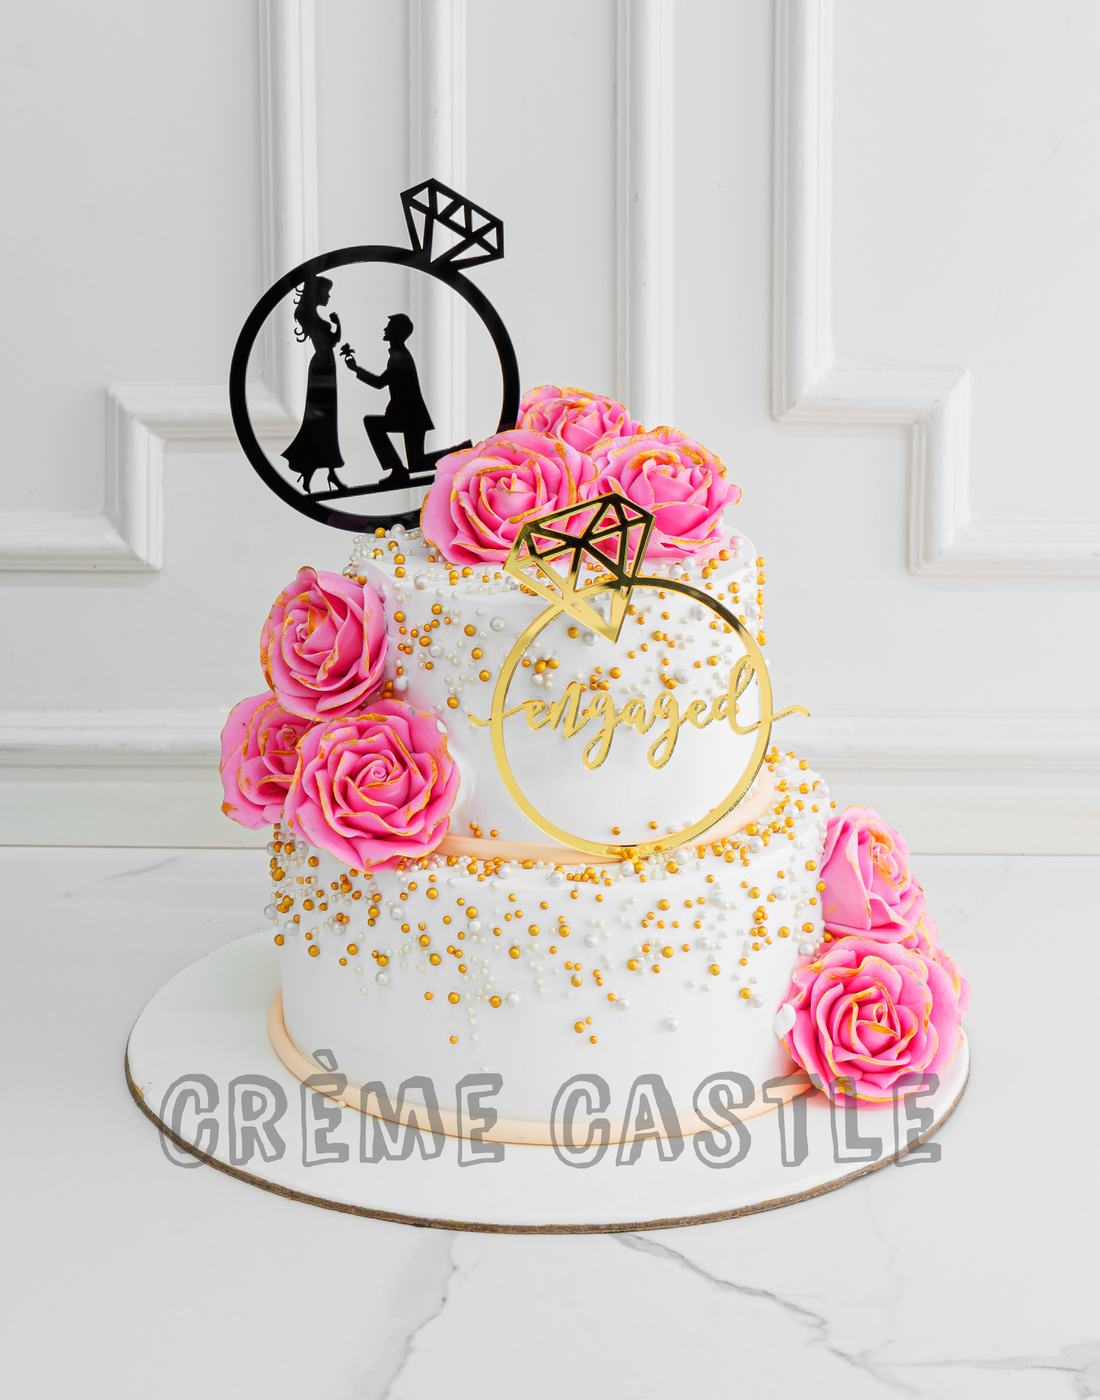 Cute Anniversary/ Engagement Theme Cake - Avon Bakers